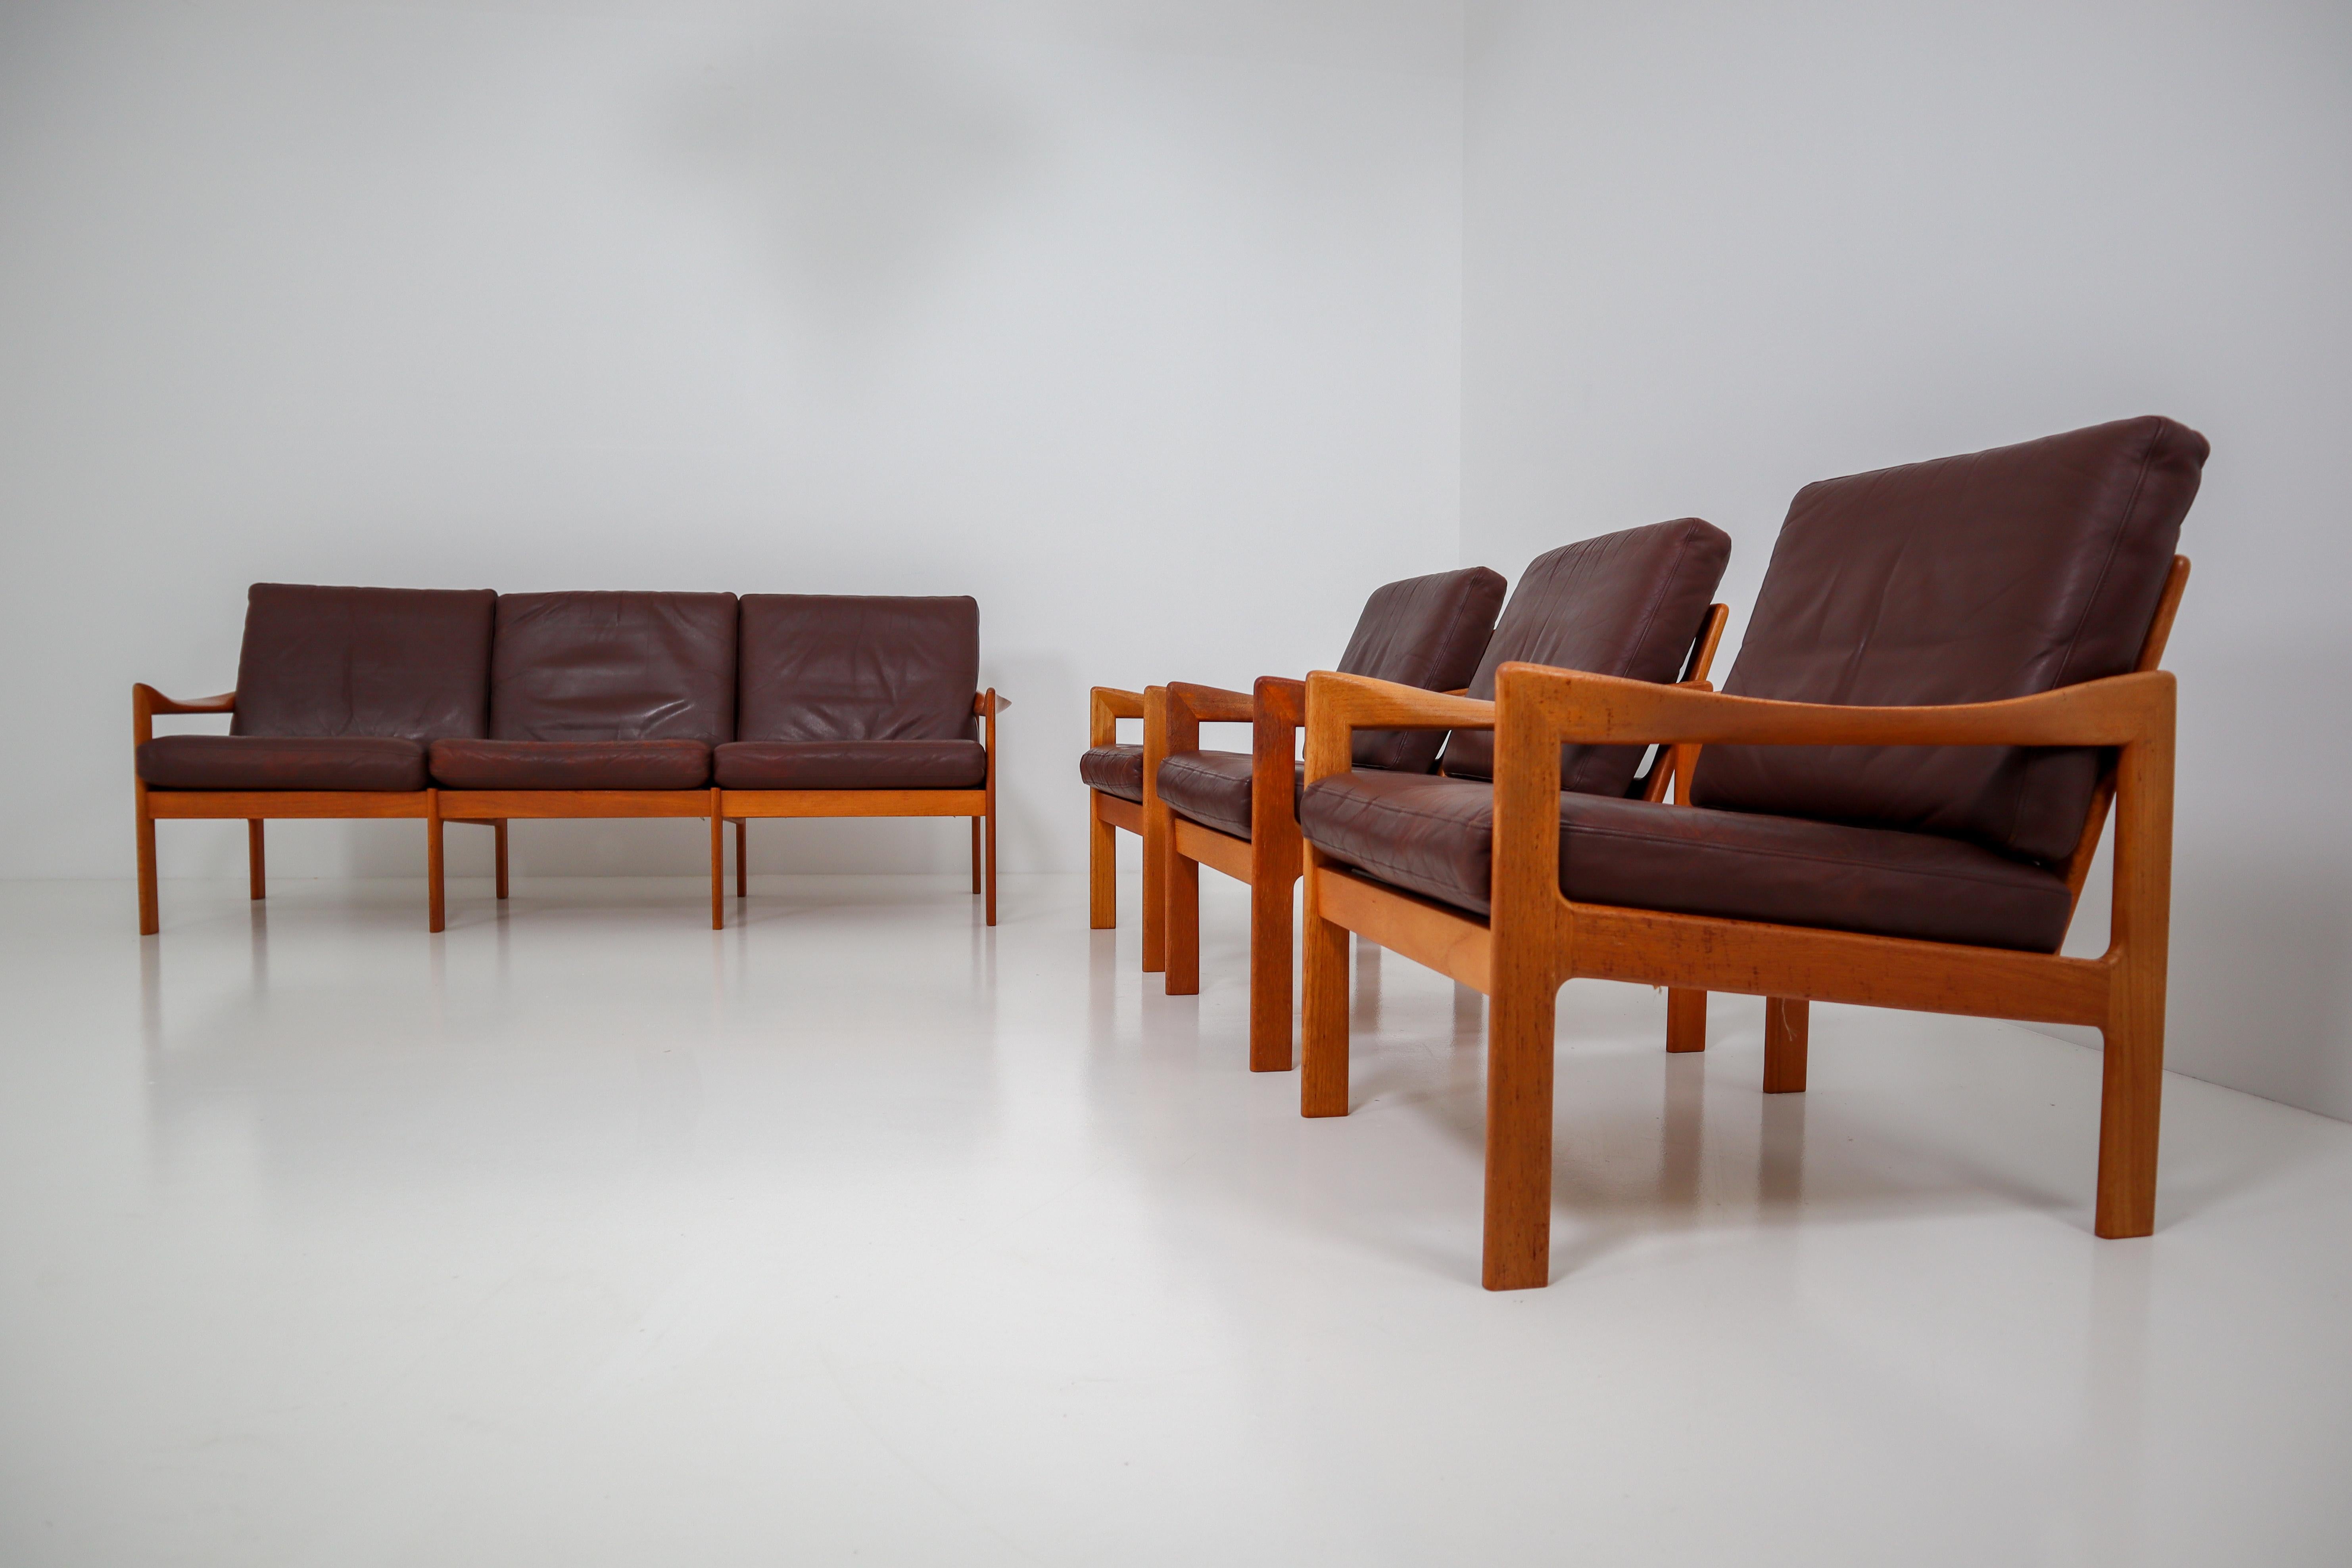 Mid-20th Century Illum Wikkelso Three-Seat Teak Sofa, Danish, 1960s, Produced by Eilersen